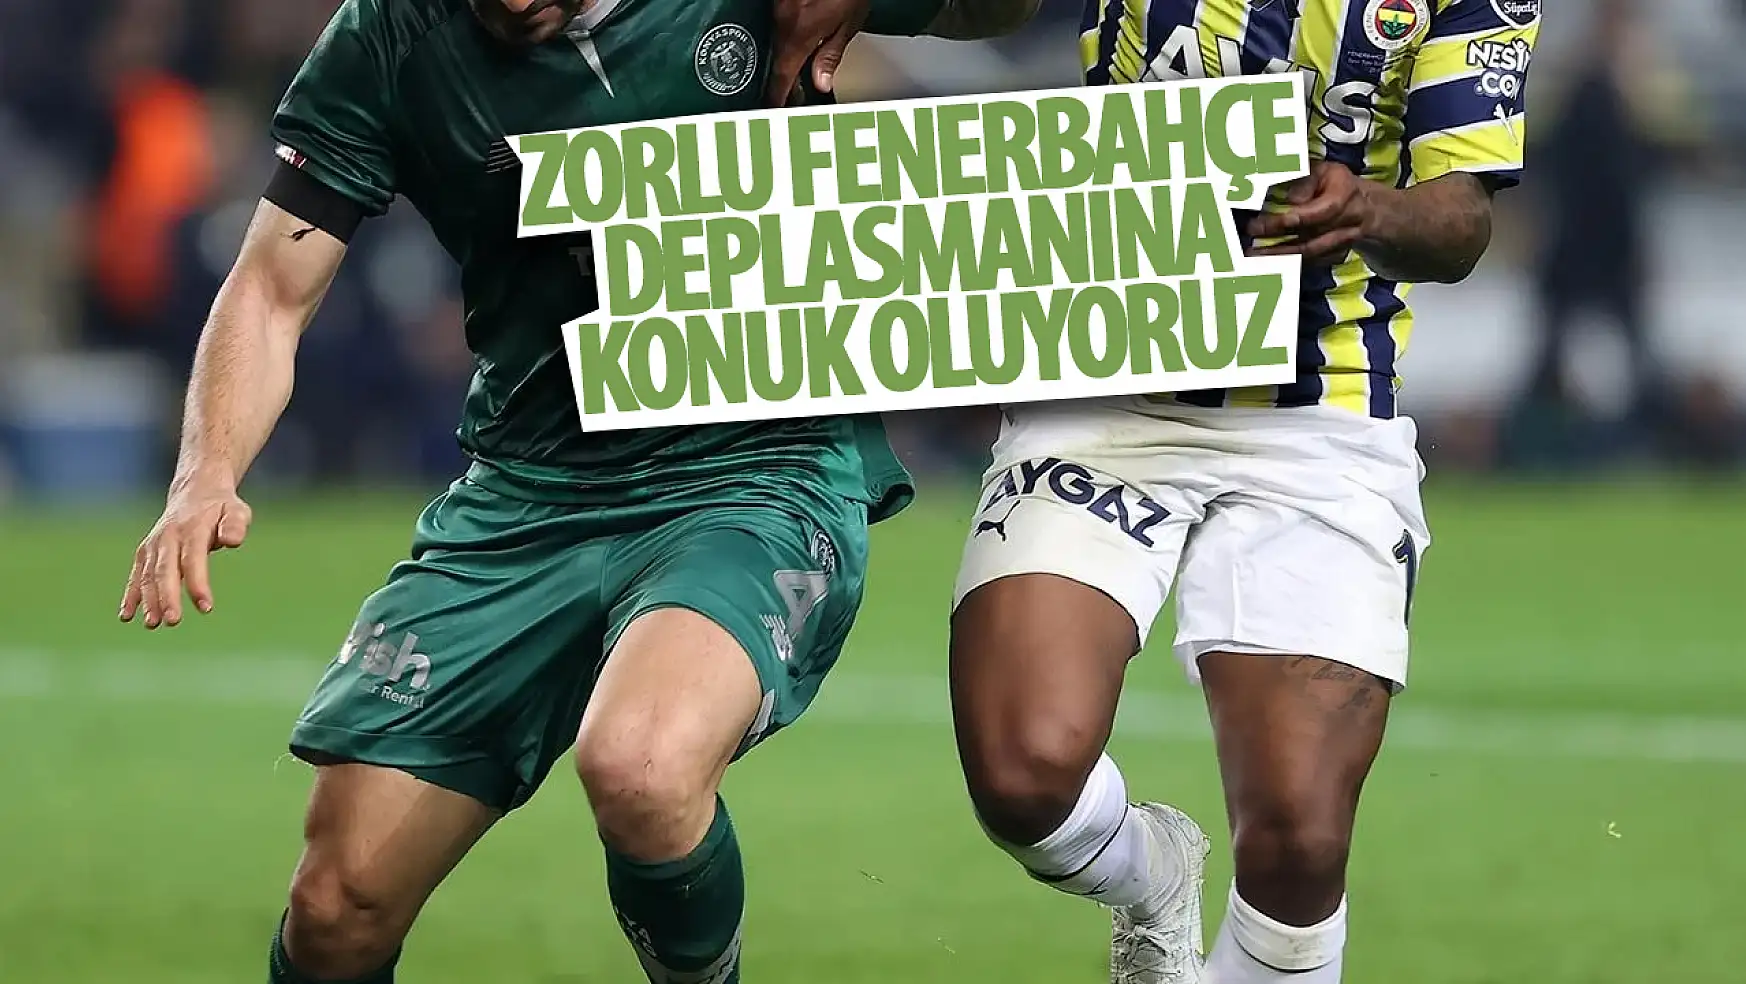 Konyaspor, zorlu Fenerbahçe deplasmanına konuk oluyor!